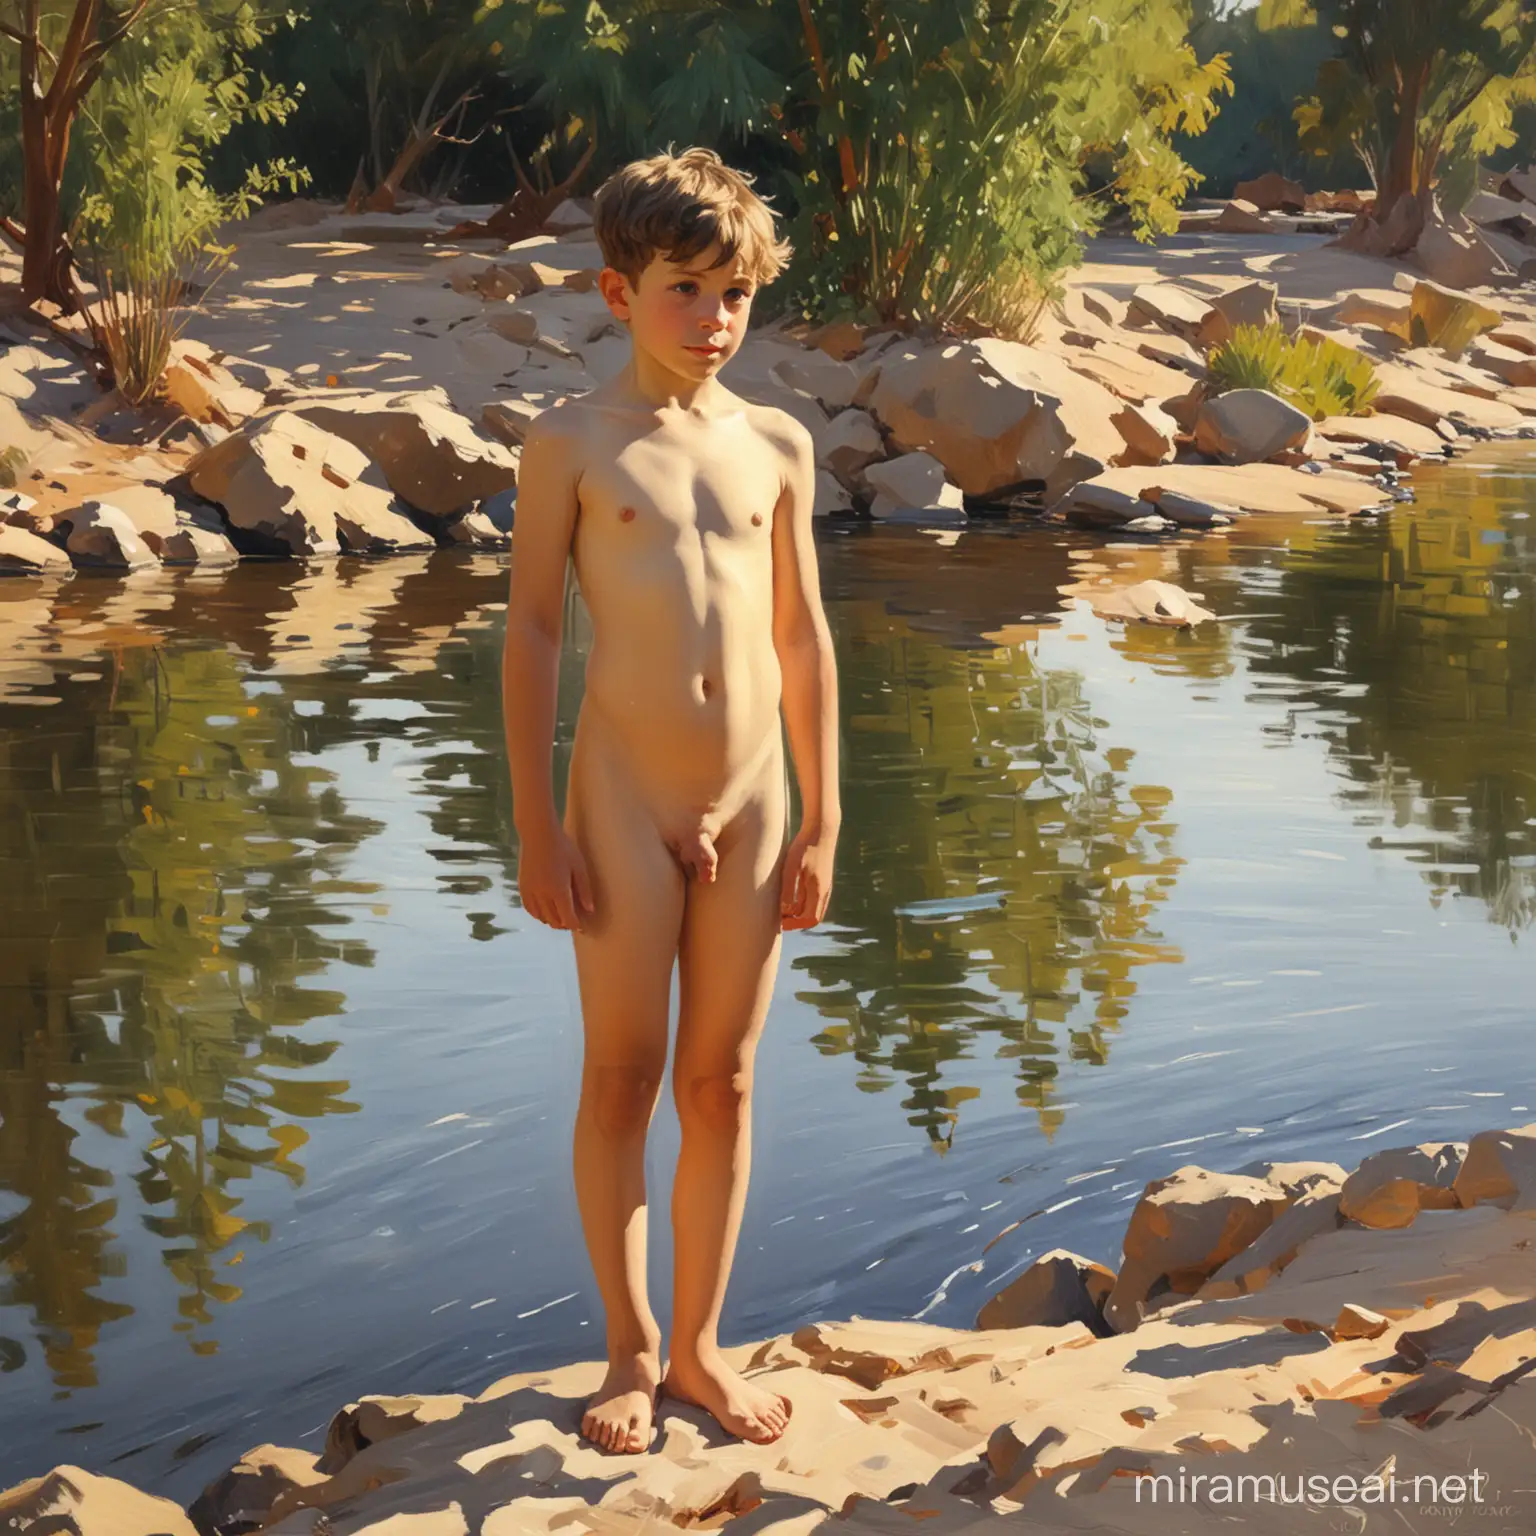 в стили хуудожника Хоакин Соролья ..картина. обнаженный мальчик в полный рост  на фоне реки .осфещение контражур.